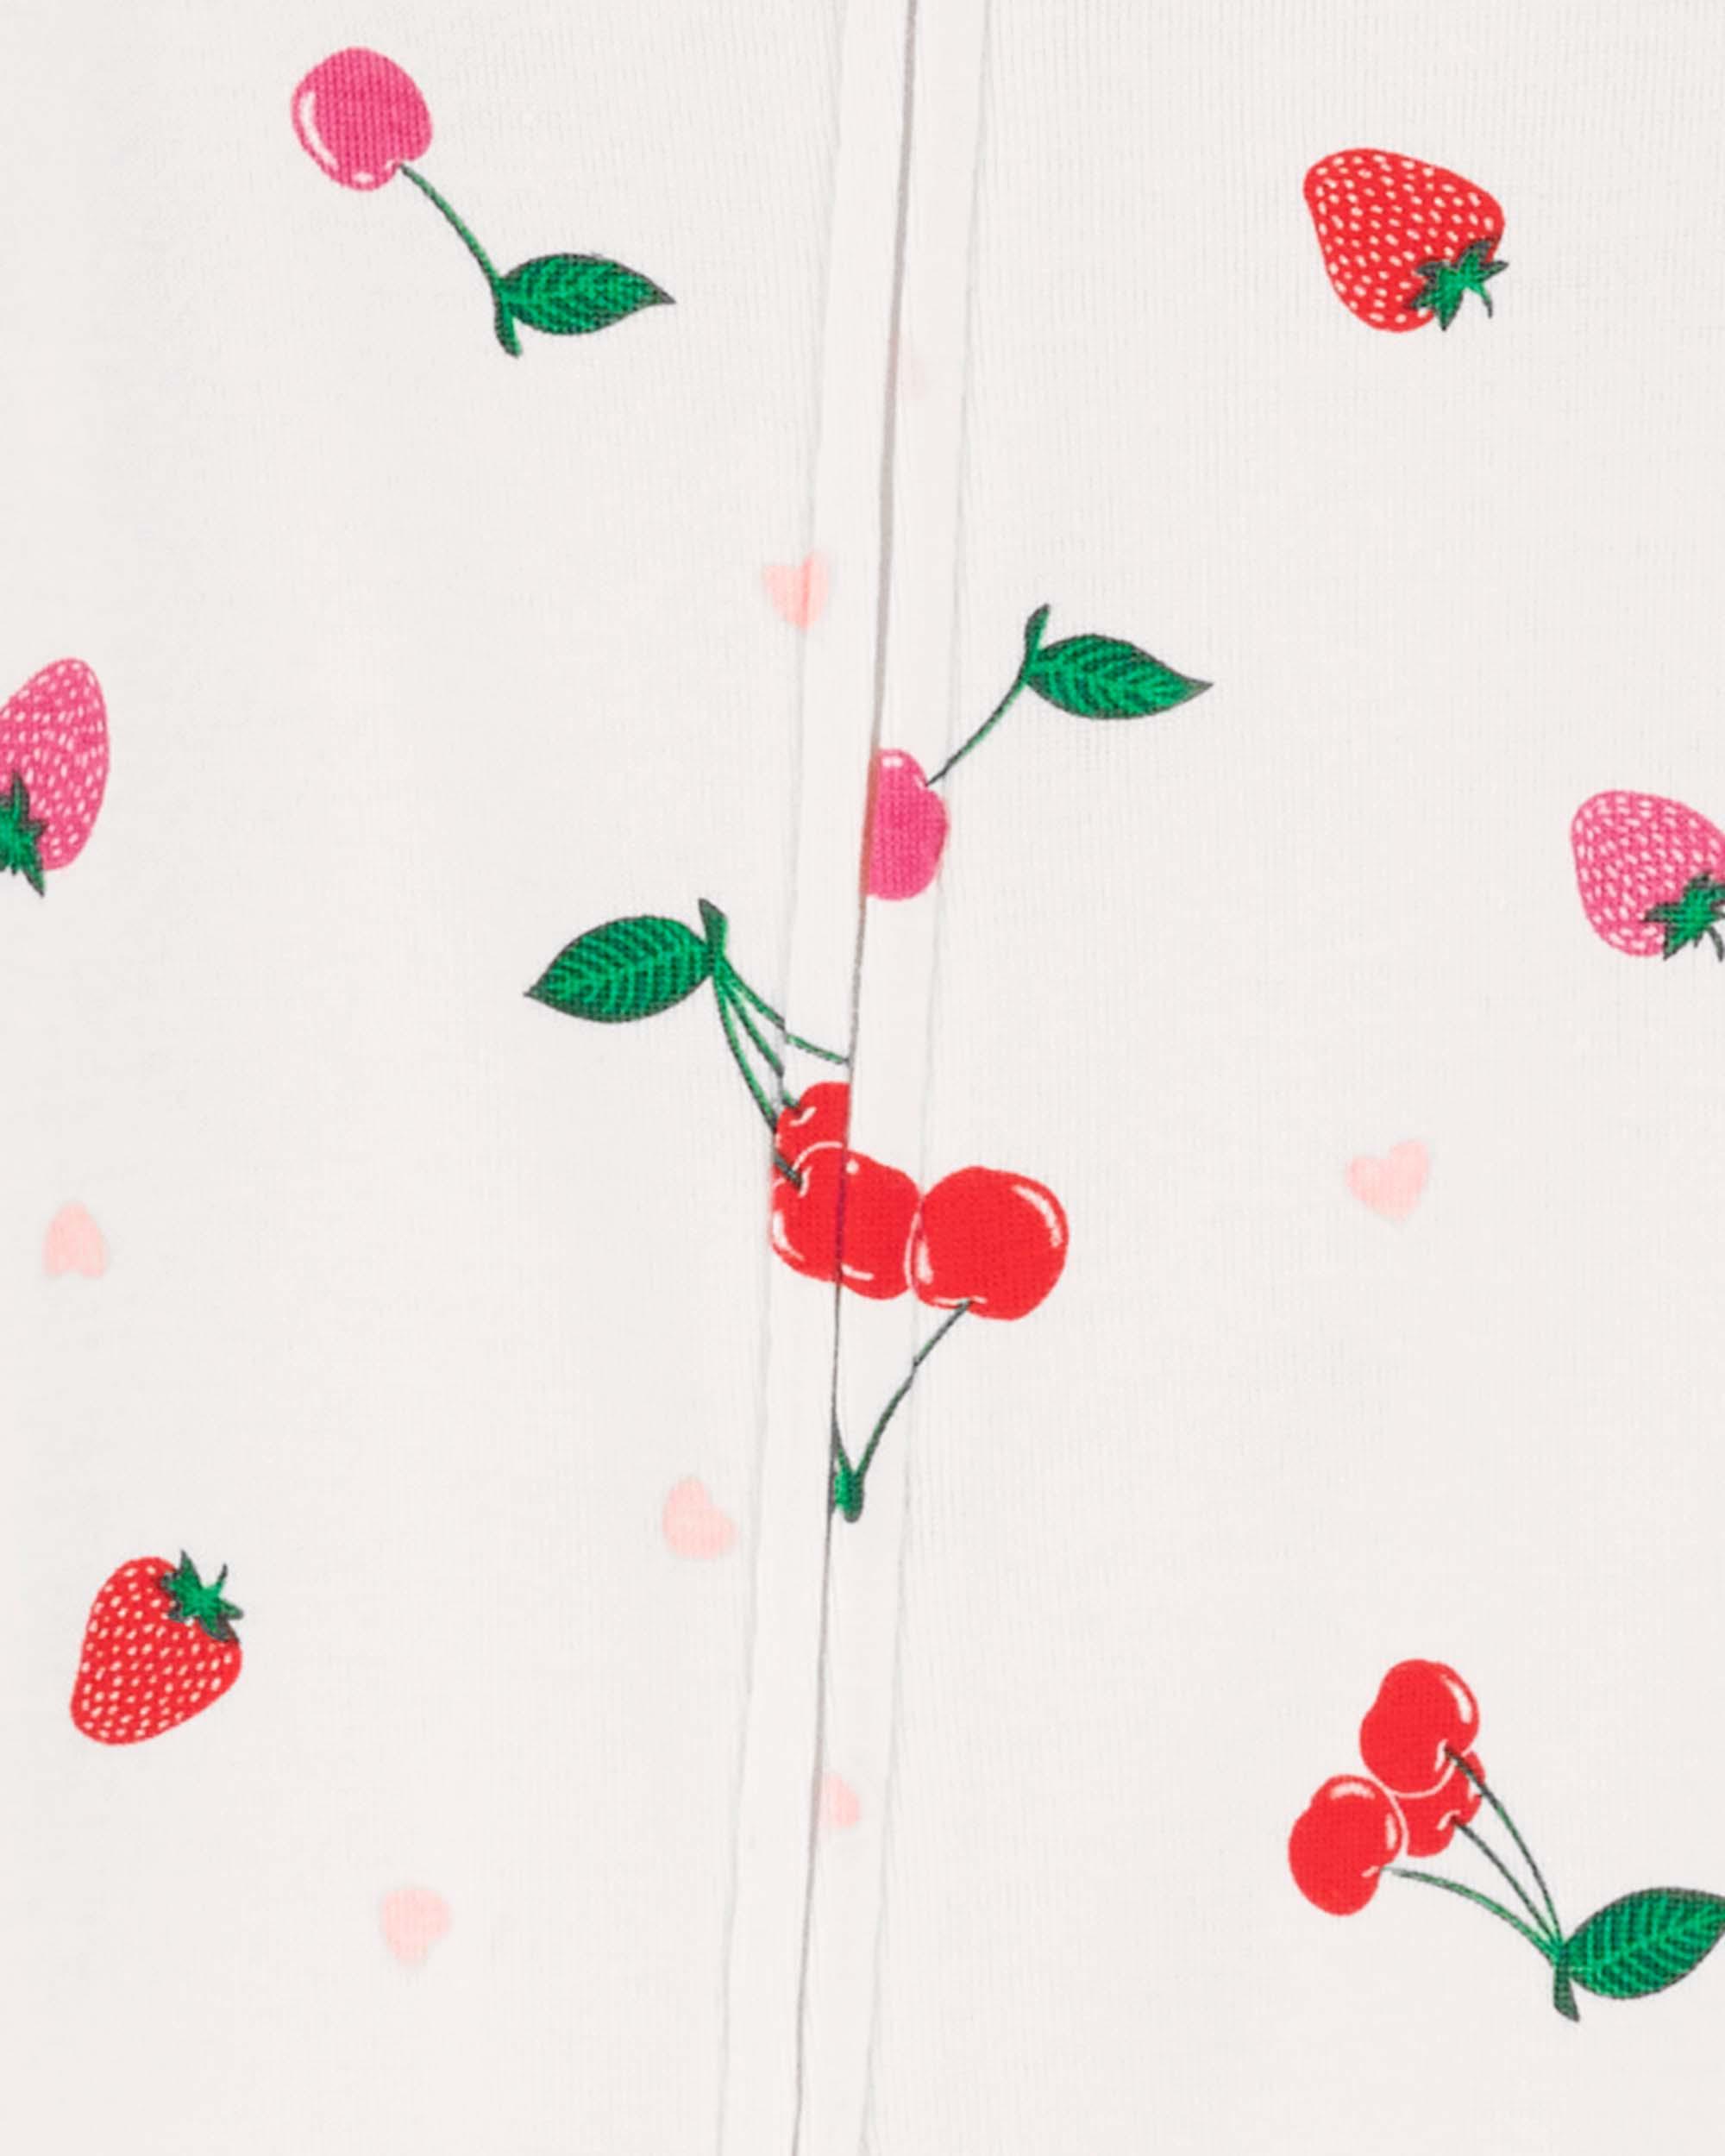 Toddler 1-Piece Strawberry Print Pyjamas